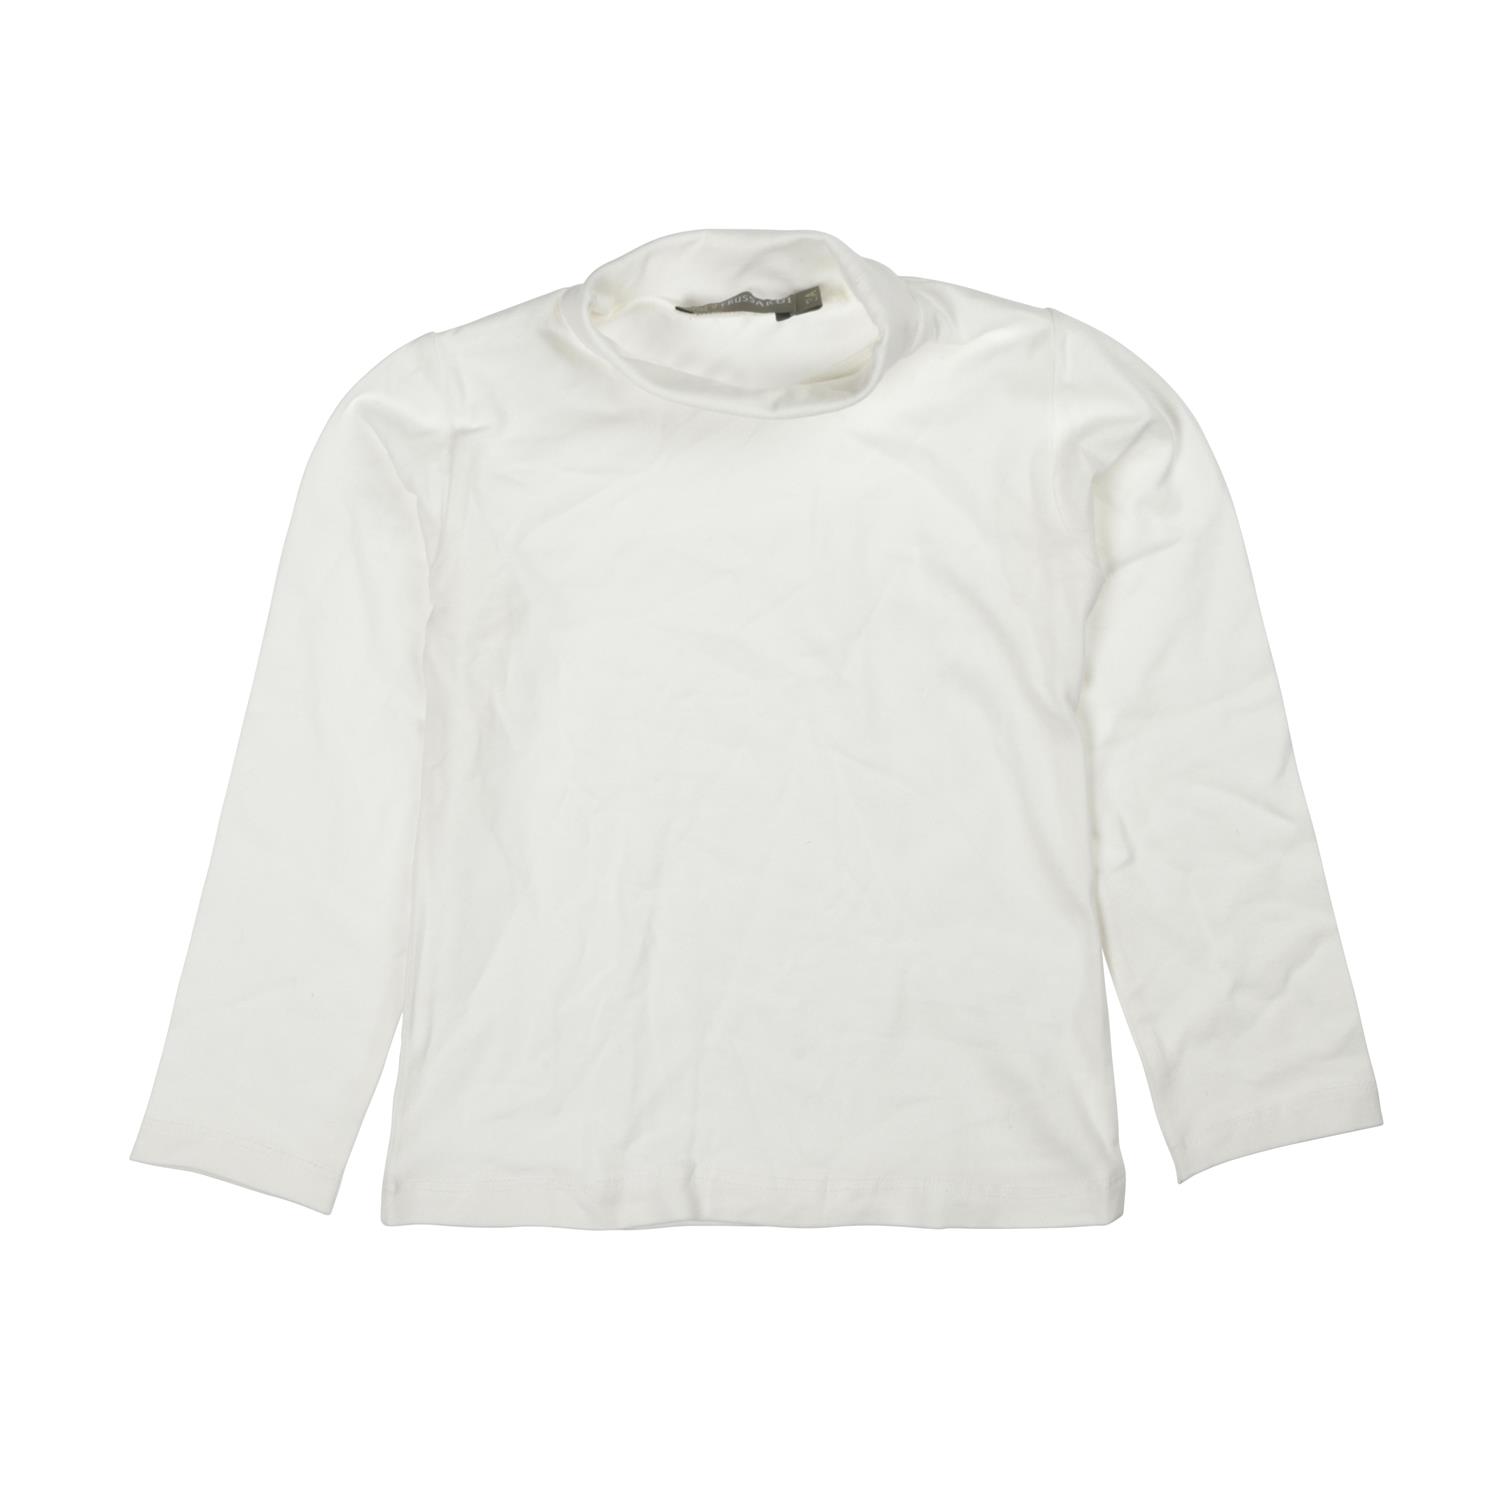 Trussardi für Baby 0-3 Monate weißer T-Shirt  Gr. 55cm